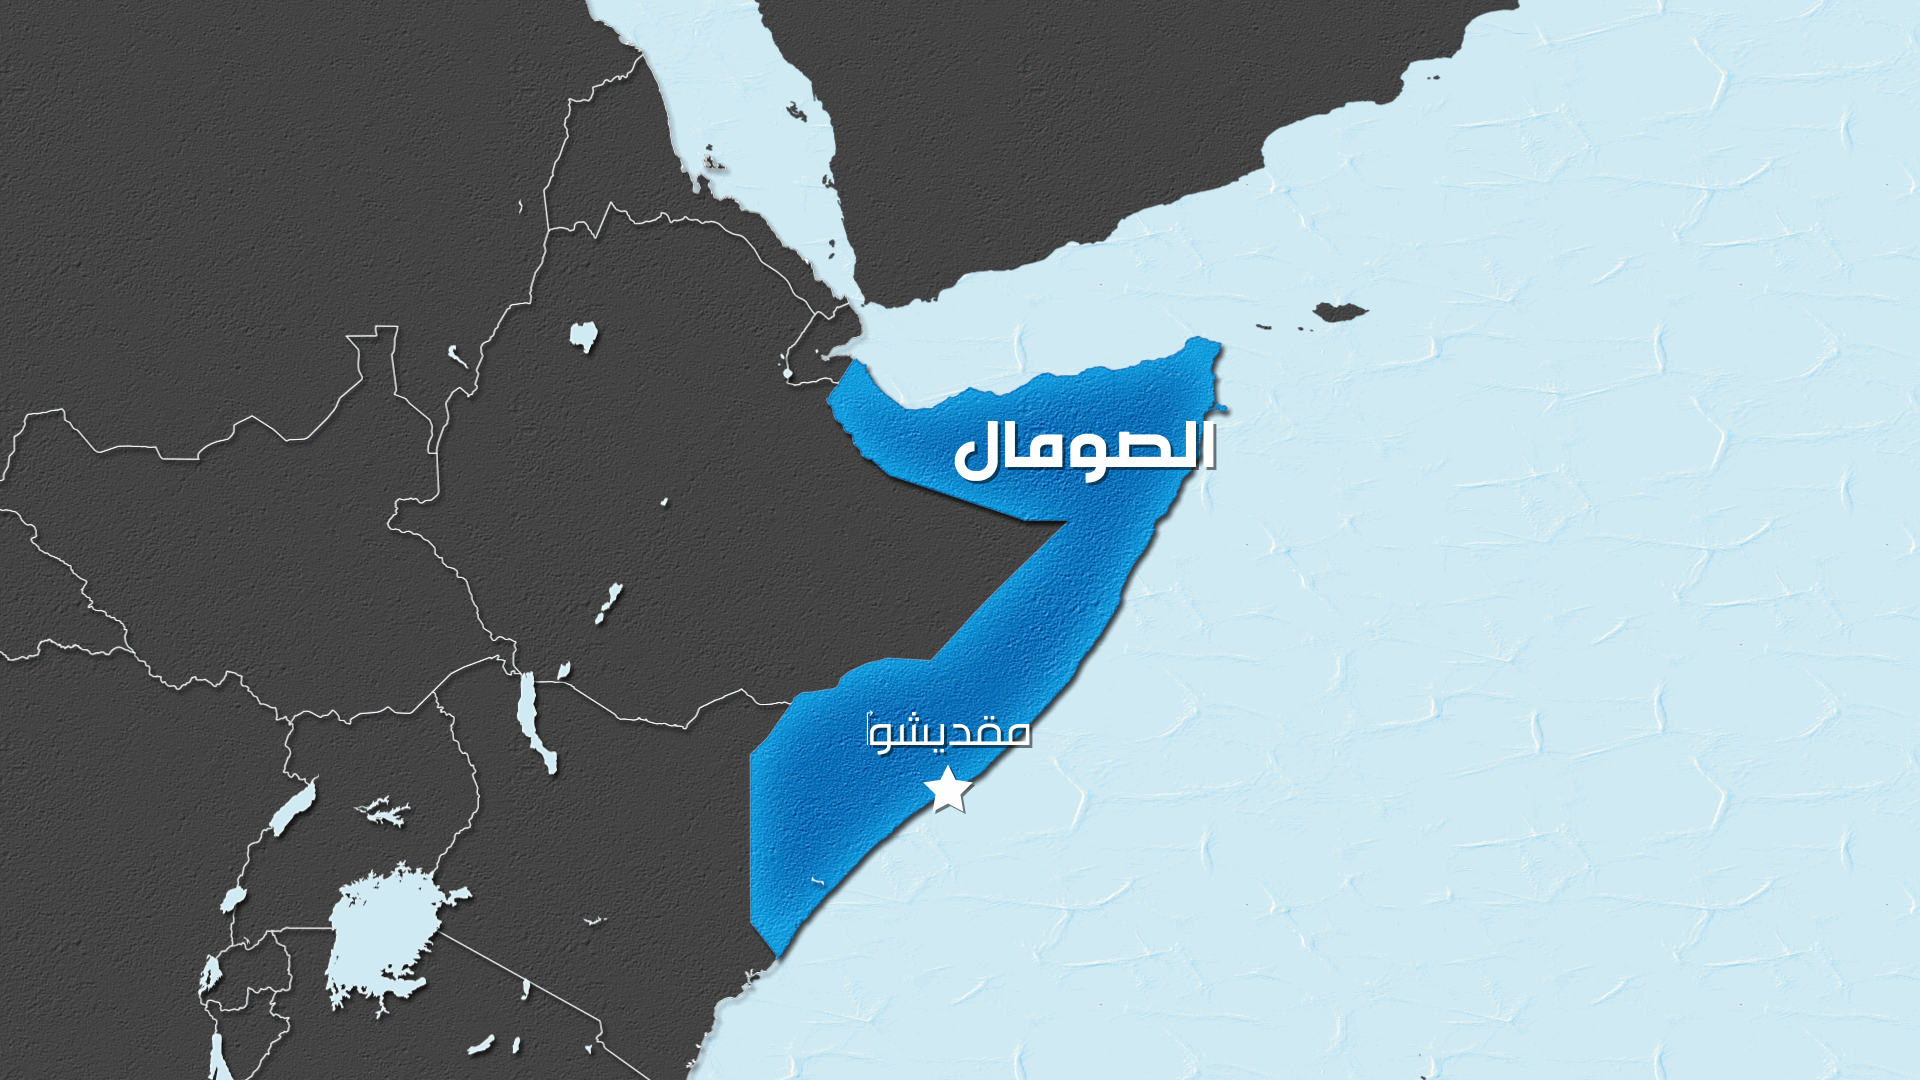 وزارة الدفاع الإماراتية: استشهاد 3 من منتسبي القوات المسلحة الإماراتية وضابط بحريني في الصومال